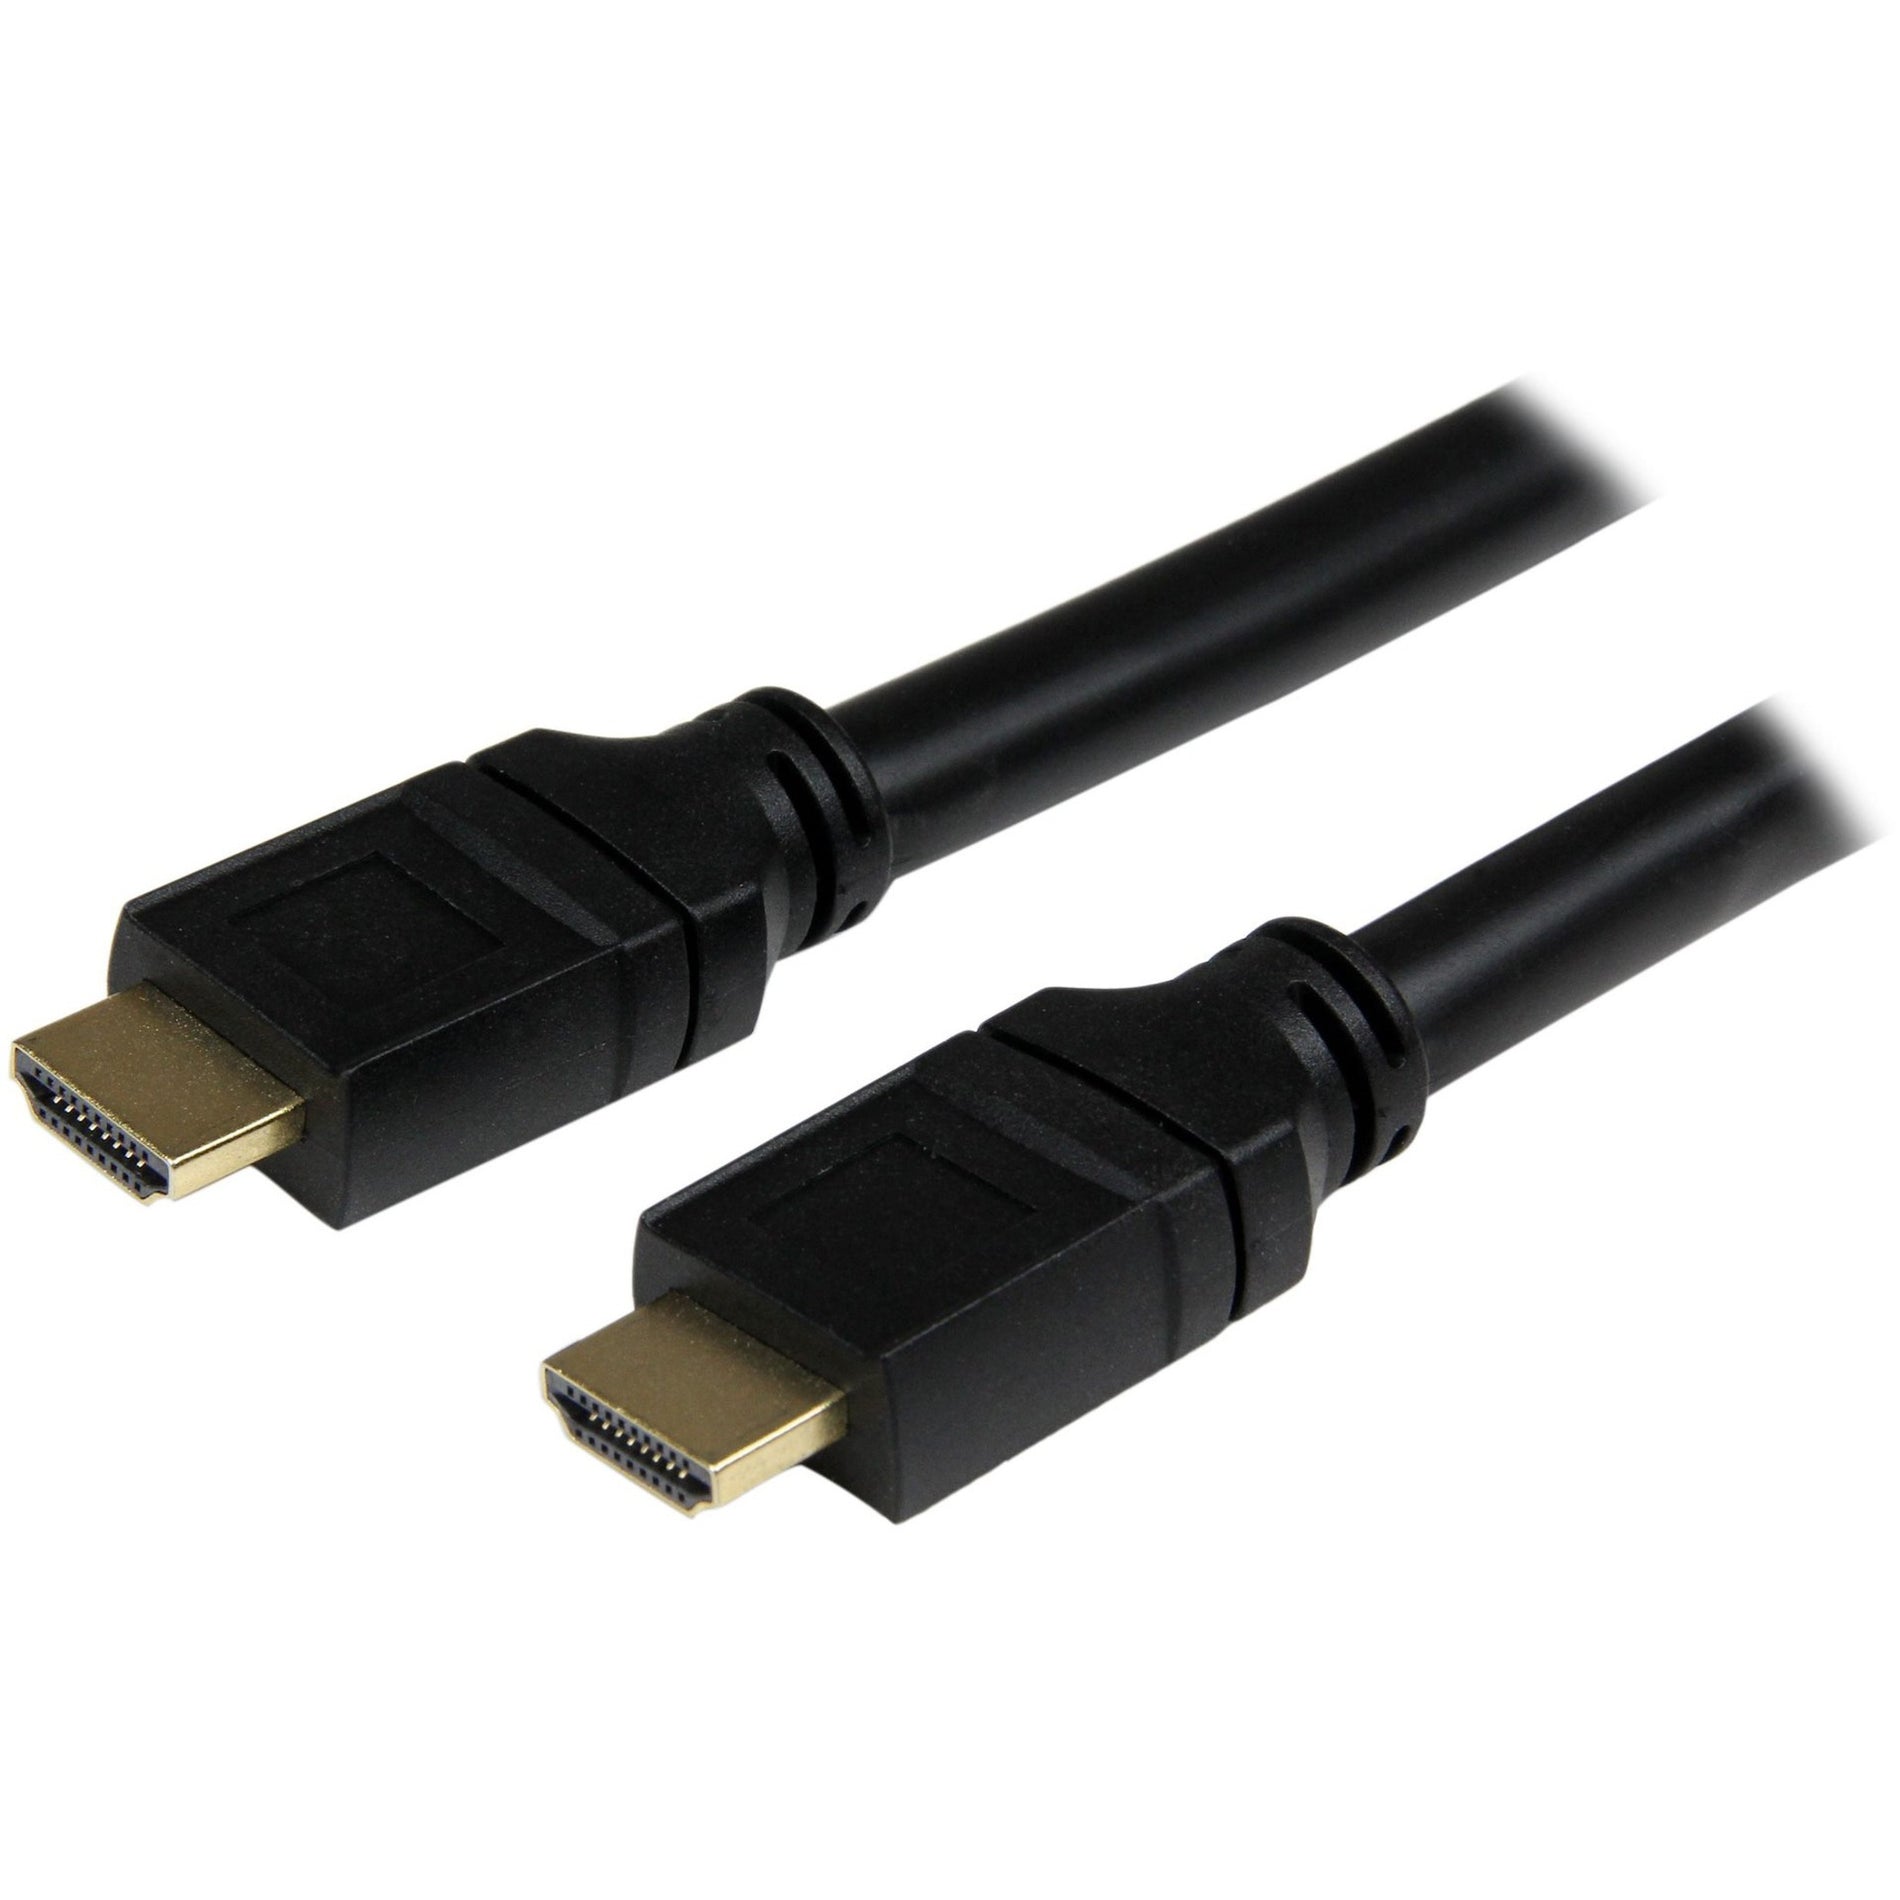 品牌名称：StarTech.com  高清晰度多媒体接口电缆 - HDMI至HDMI - M/M，数据传输速率10.2 Gb/s，支持4096 x 2160分辨率。